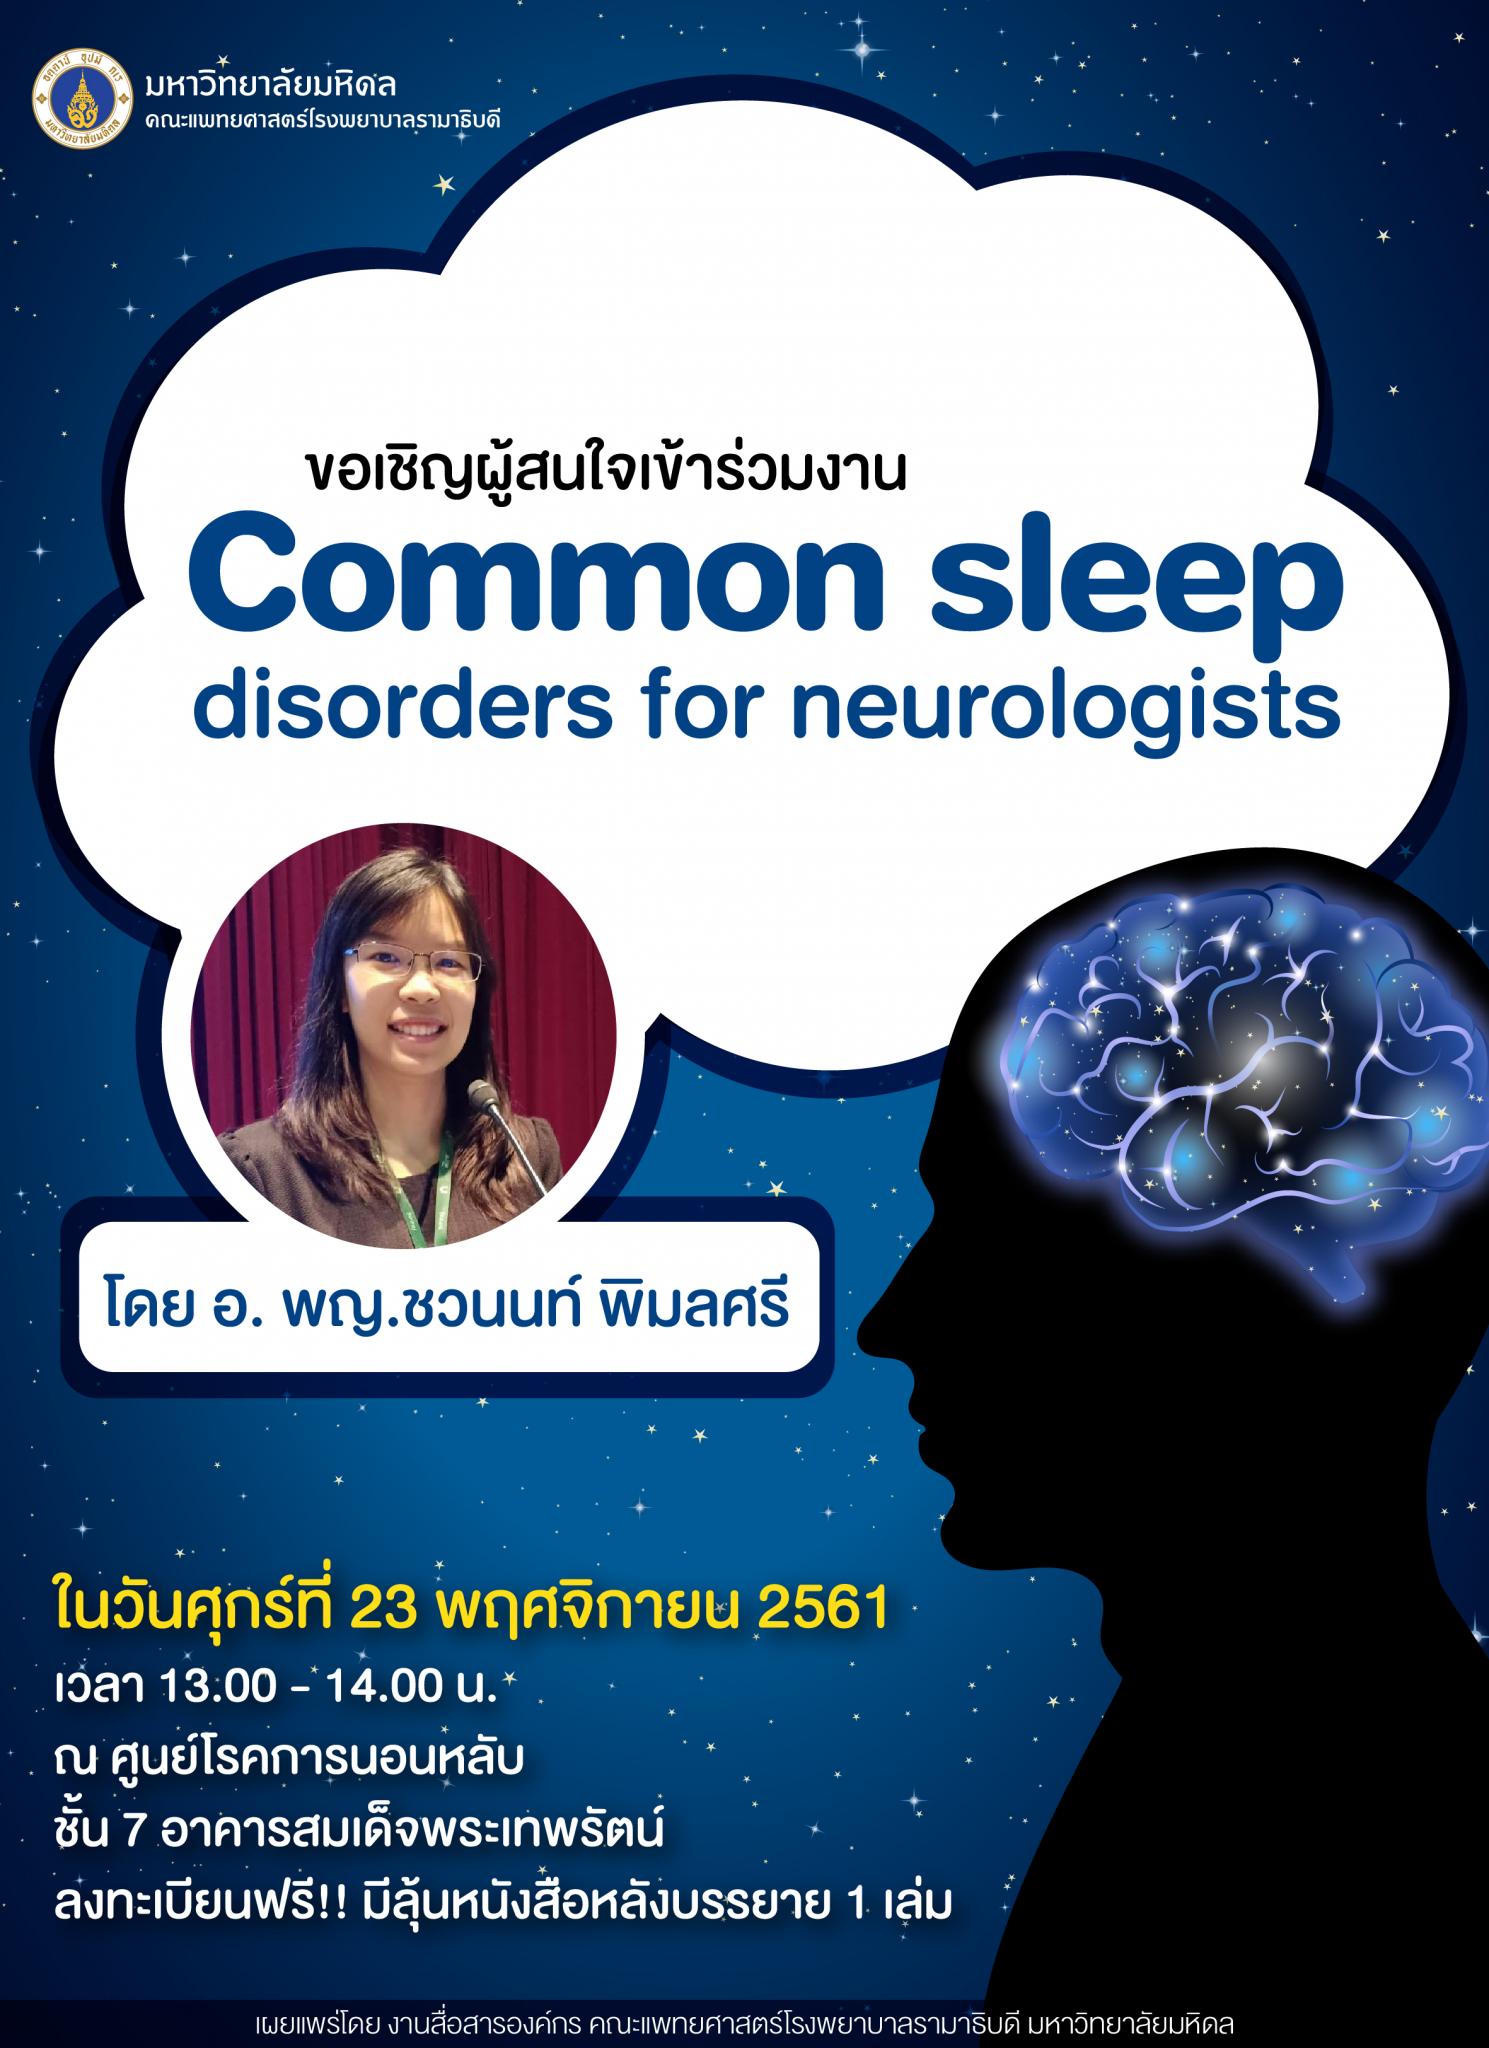 ขอเชิญผู้สนใจเข้าร่วมงาน "Common sleep disorders for neurologists"